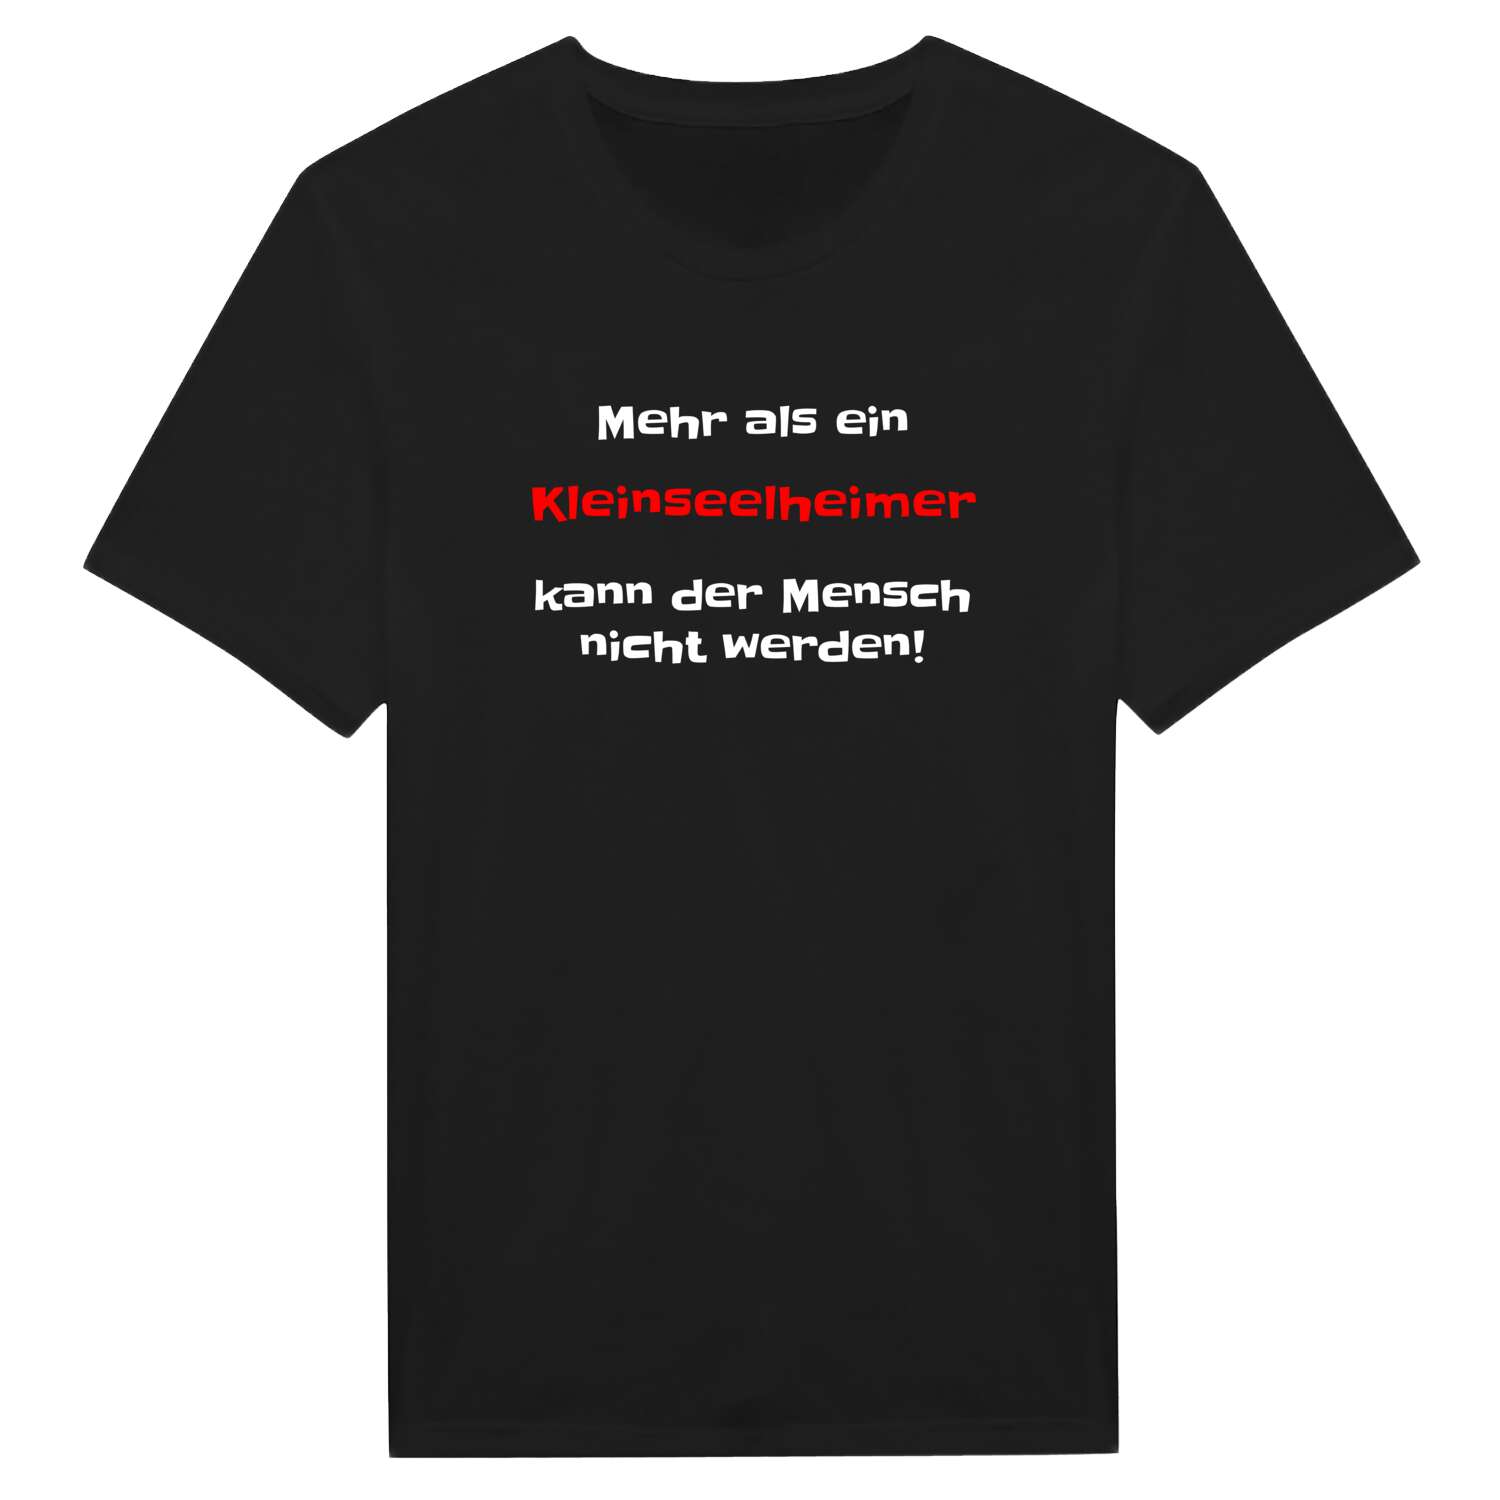 Kleinseelheim T-Shirt »Mehr als ein«